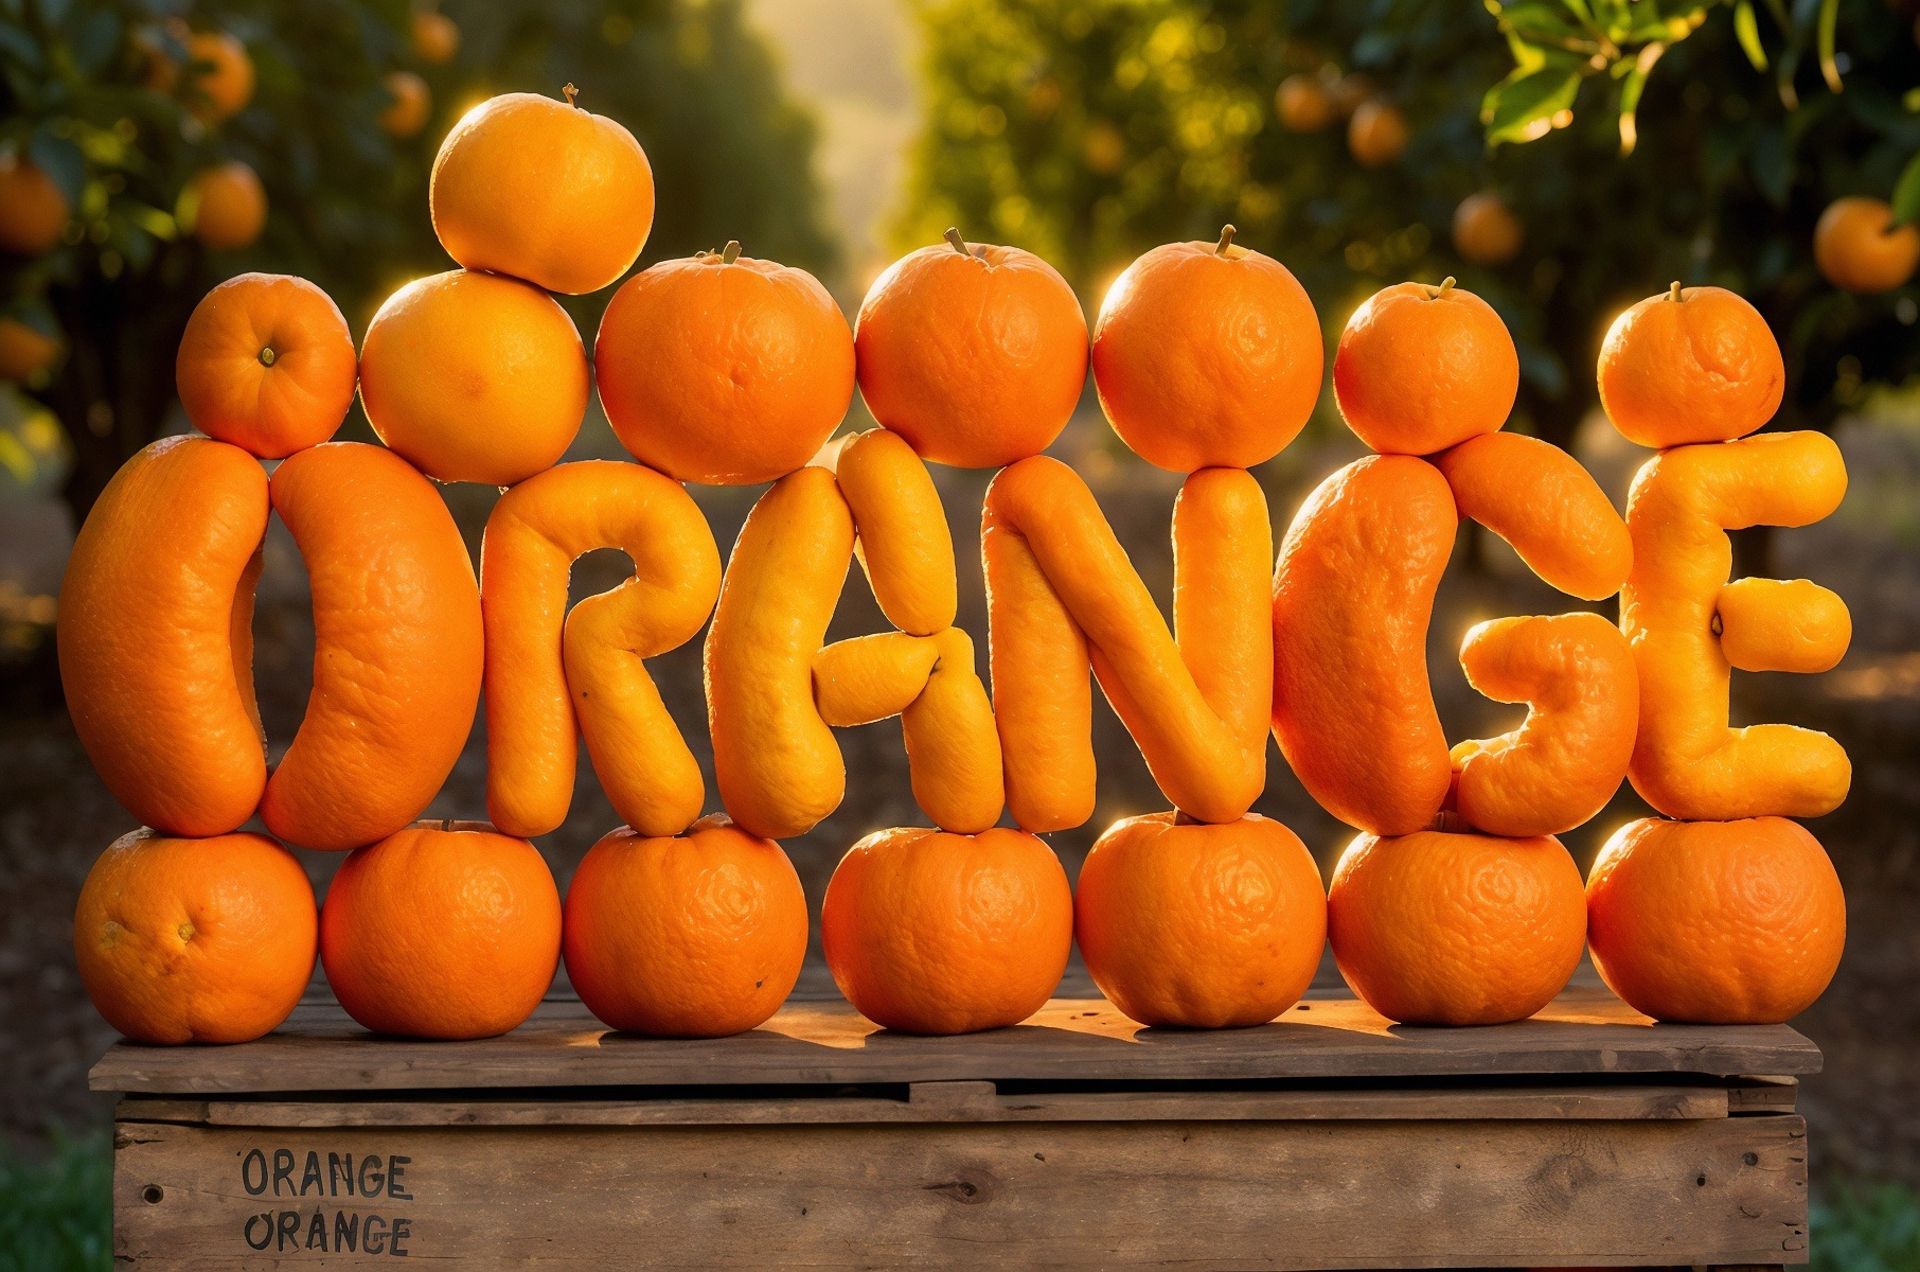 عبارت Orange ساخته شده با پرتغال توسط هوش مصنوعی Leonardo.ai